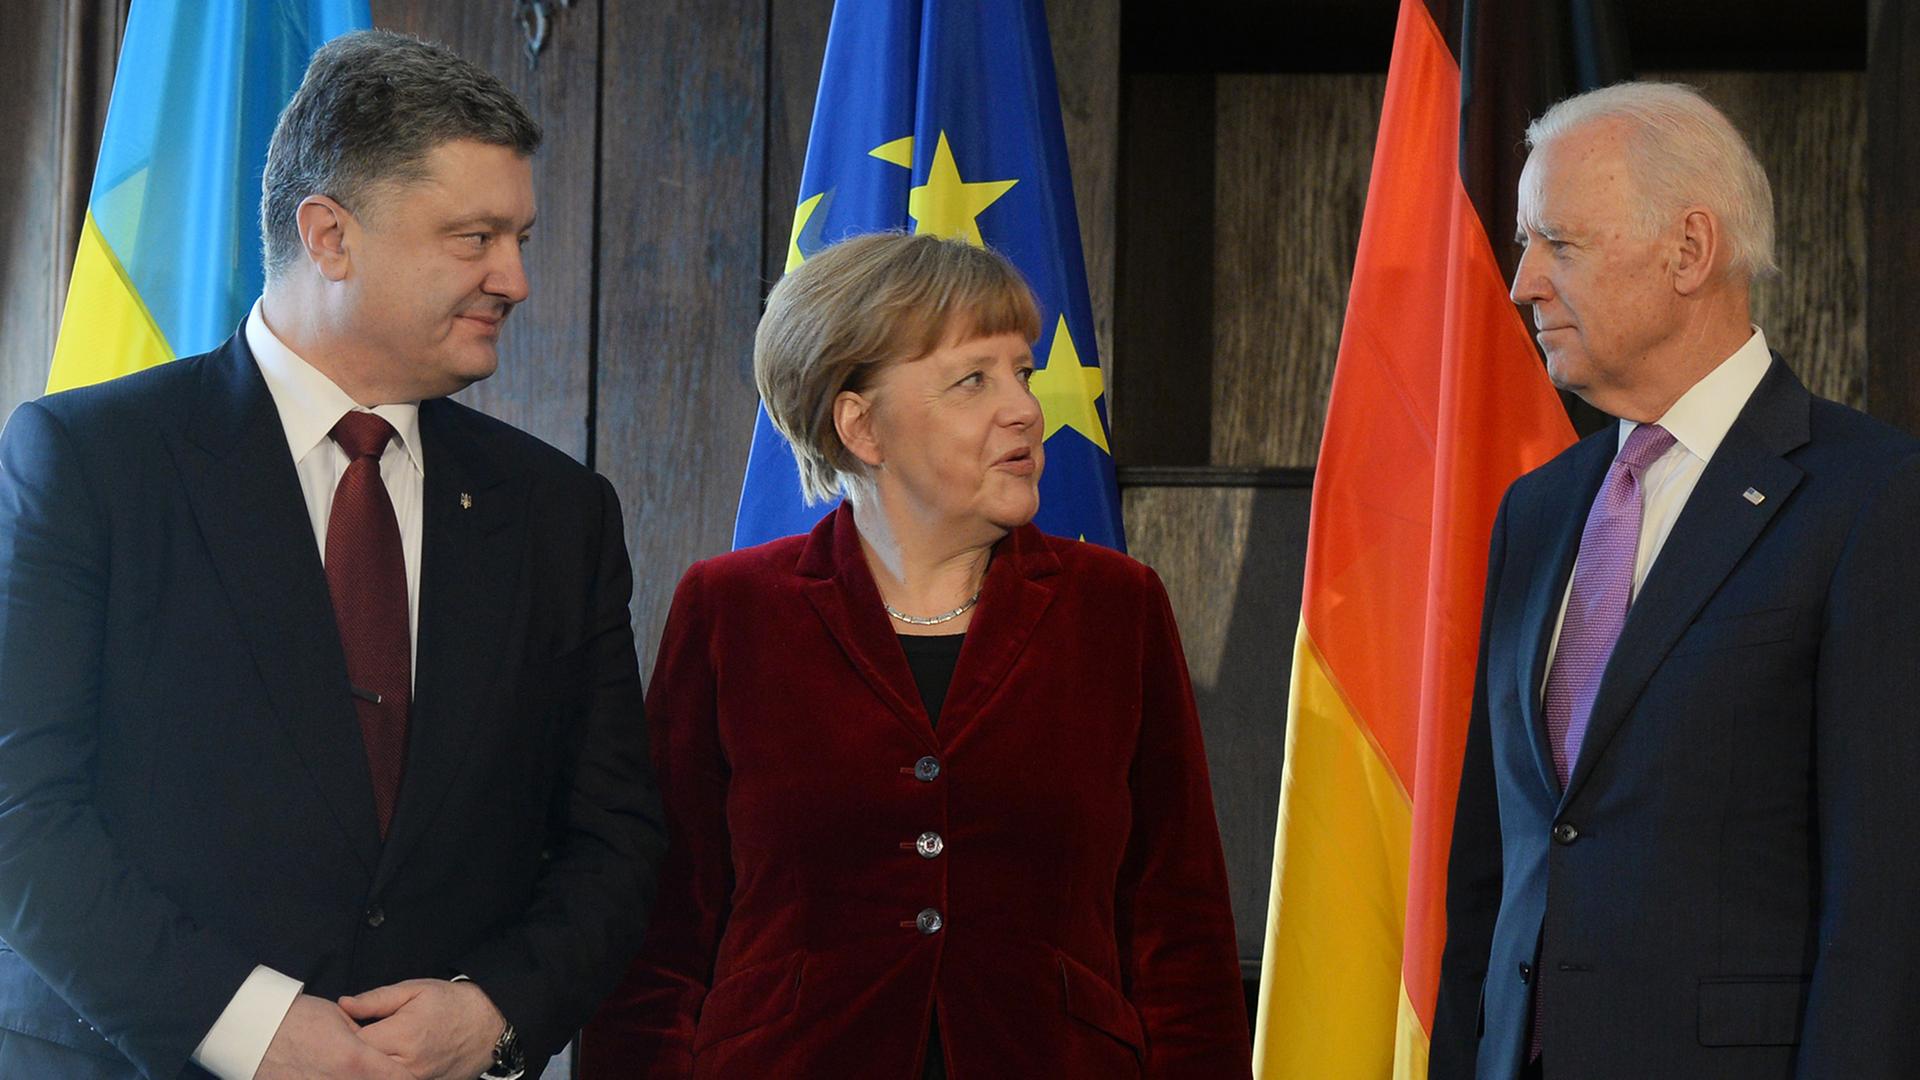 Der ukrainische Präsident Petro Poroschenko, Bundeskanzlerin Angela Merkel und US-Vizepräsident Joe Biden stehen nebeneinander.